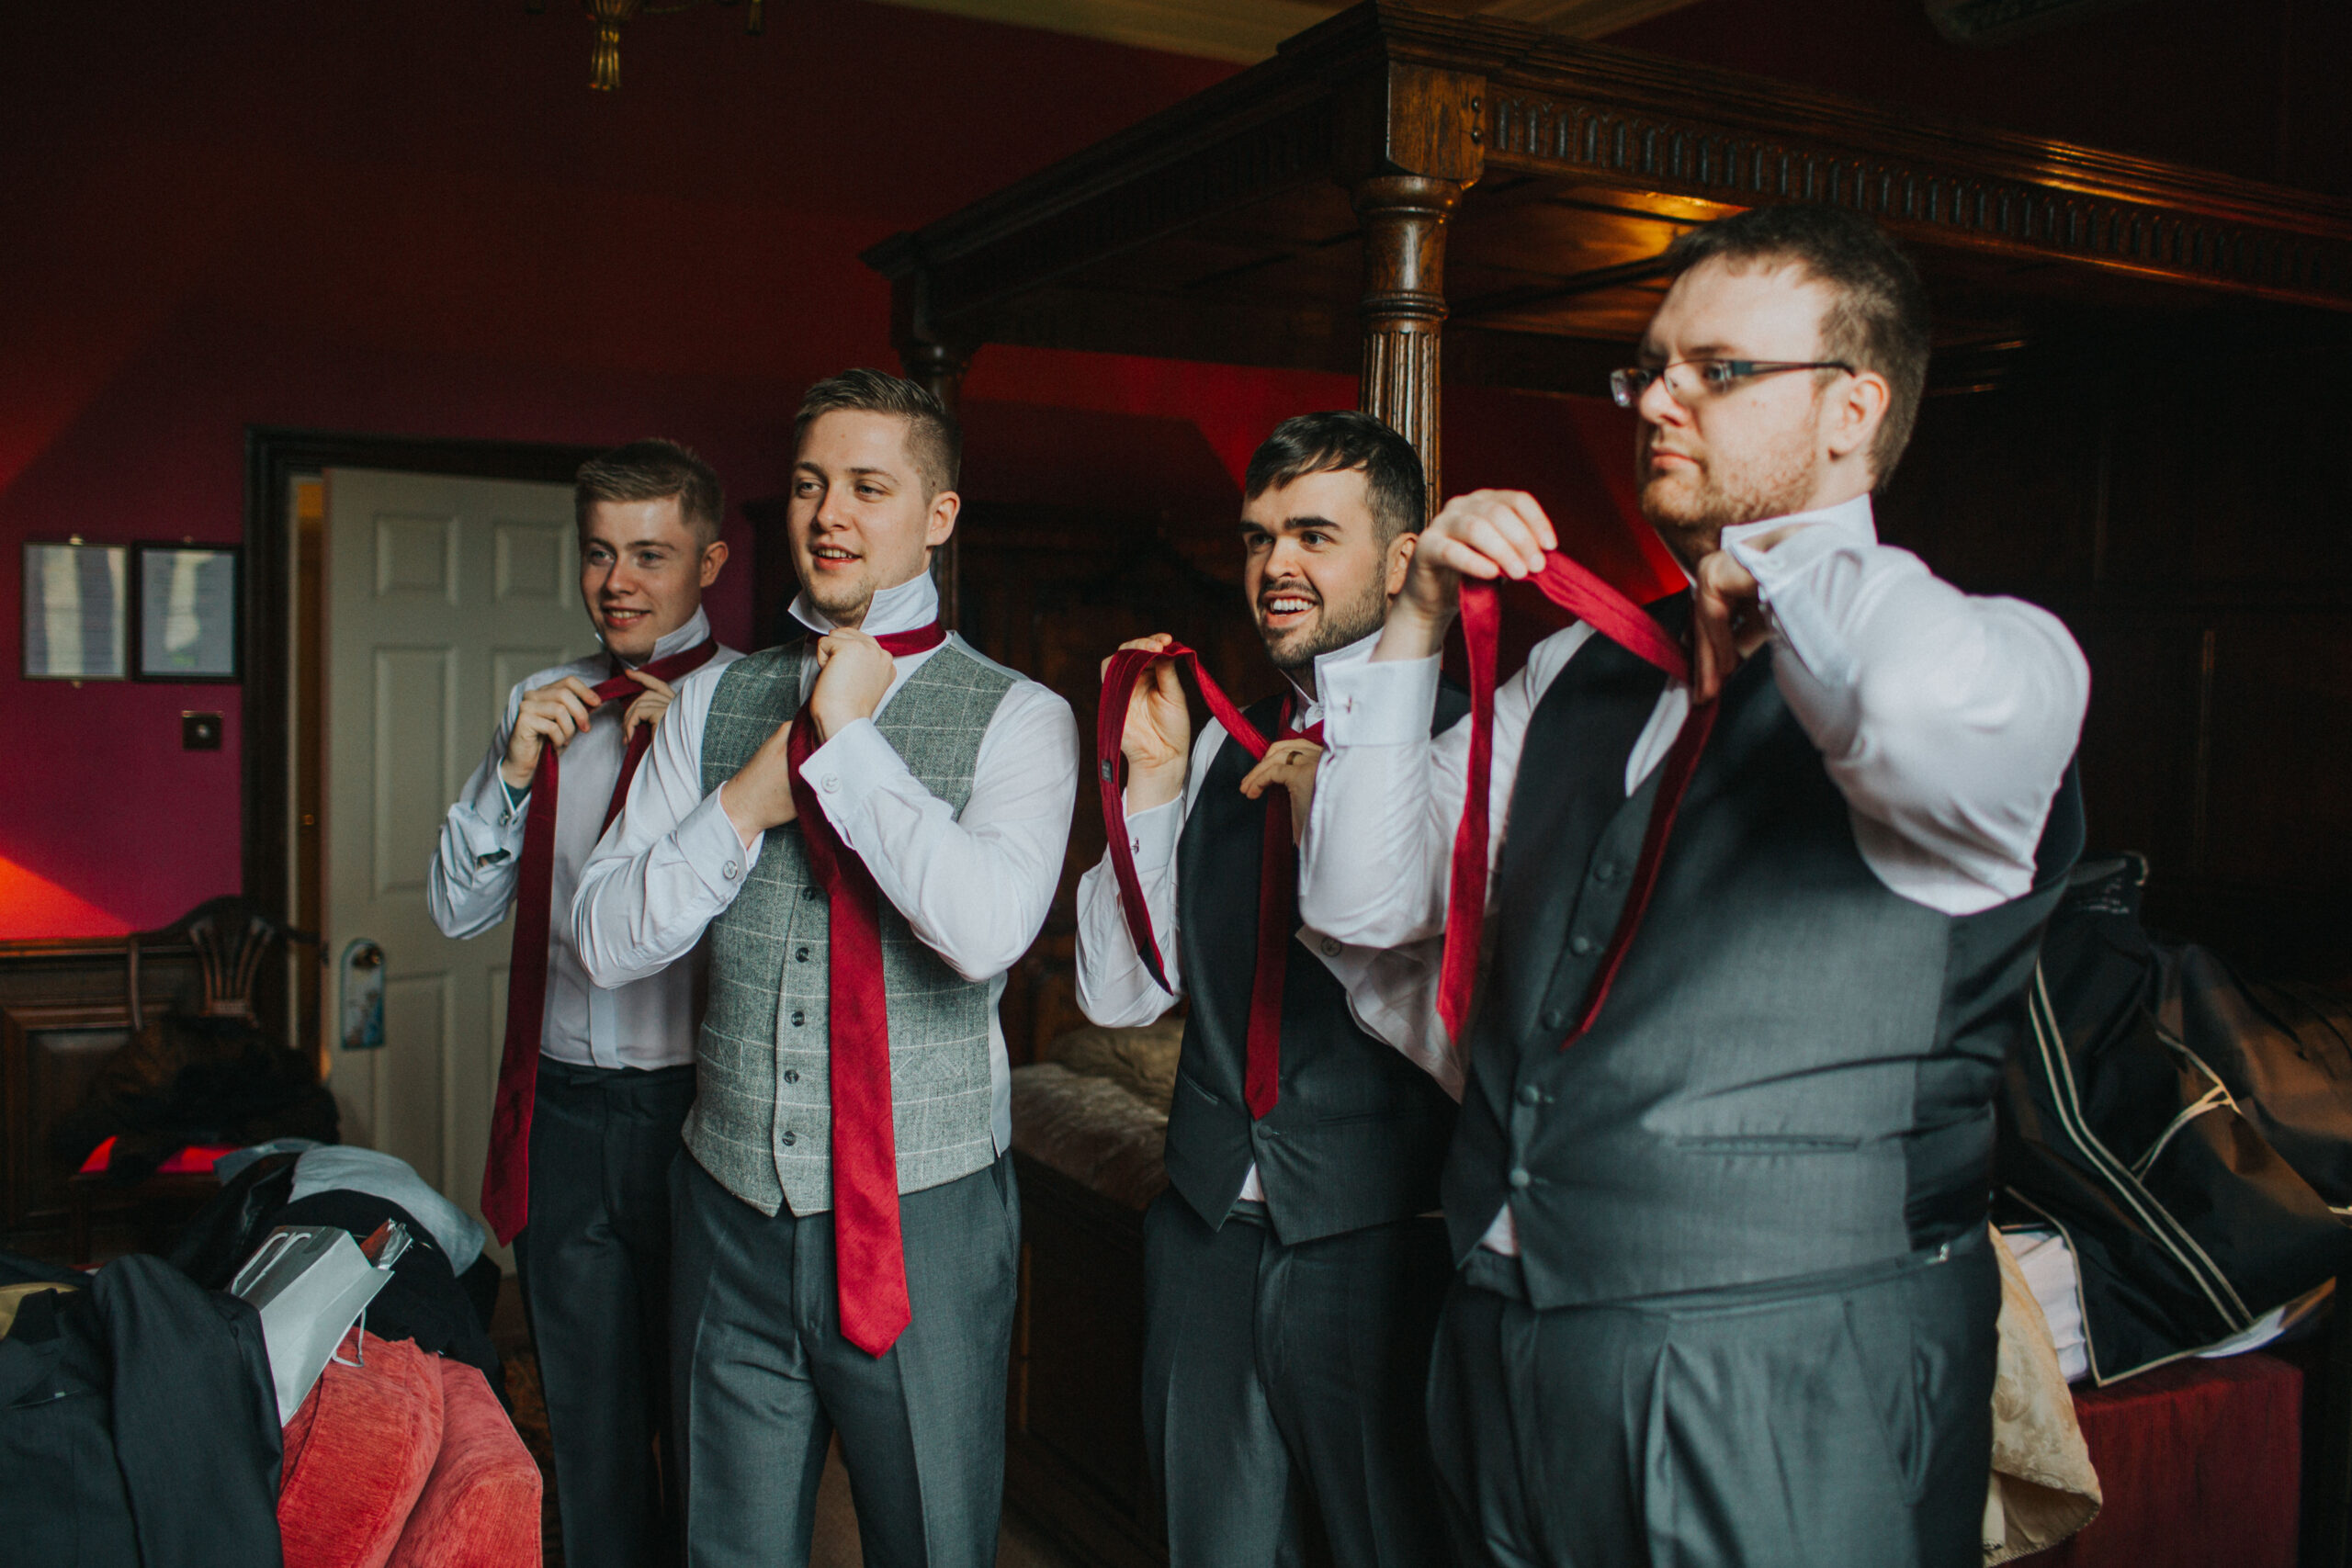 groom and groomsmen doing their ties